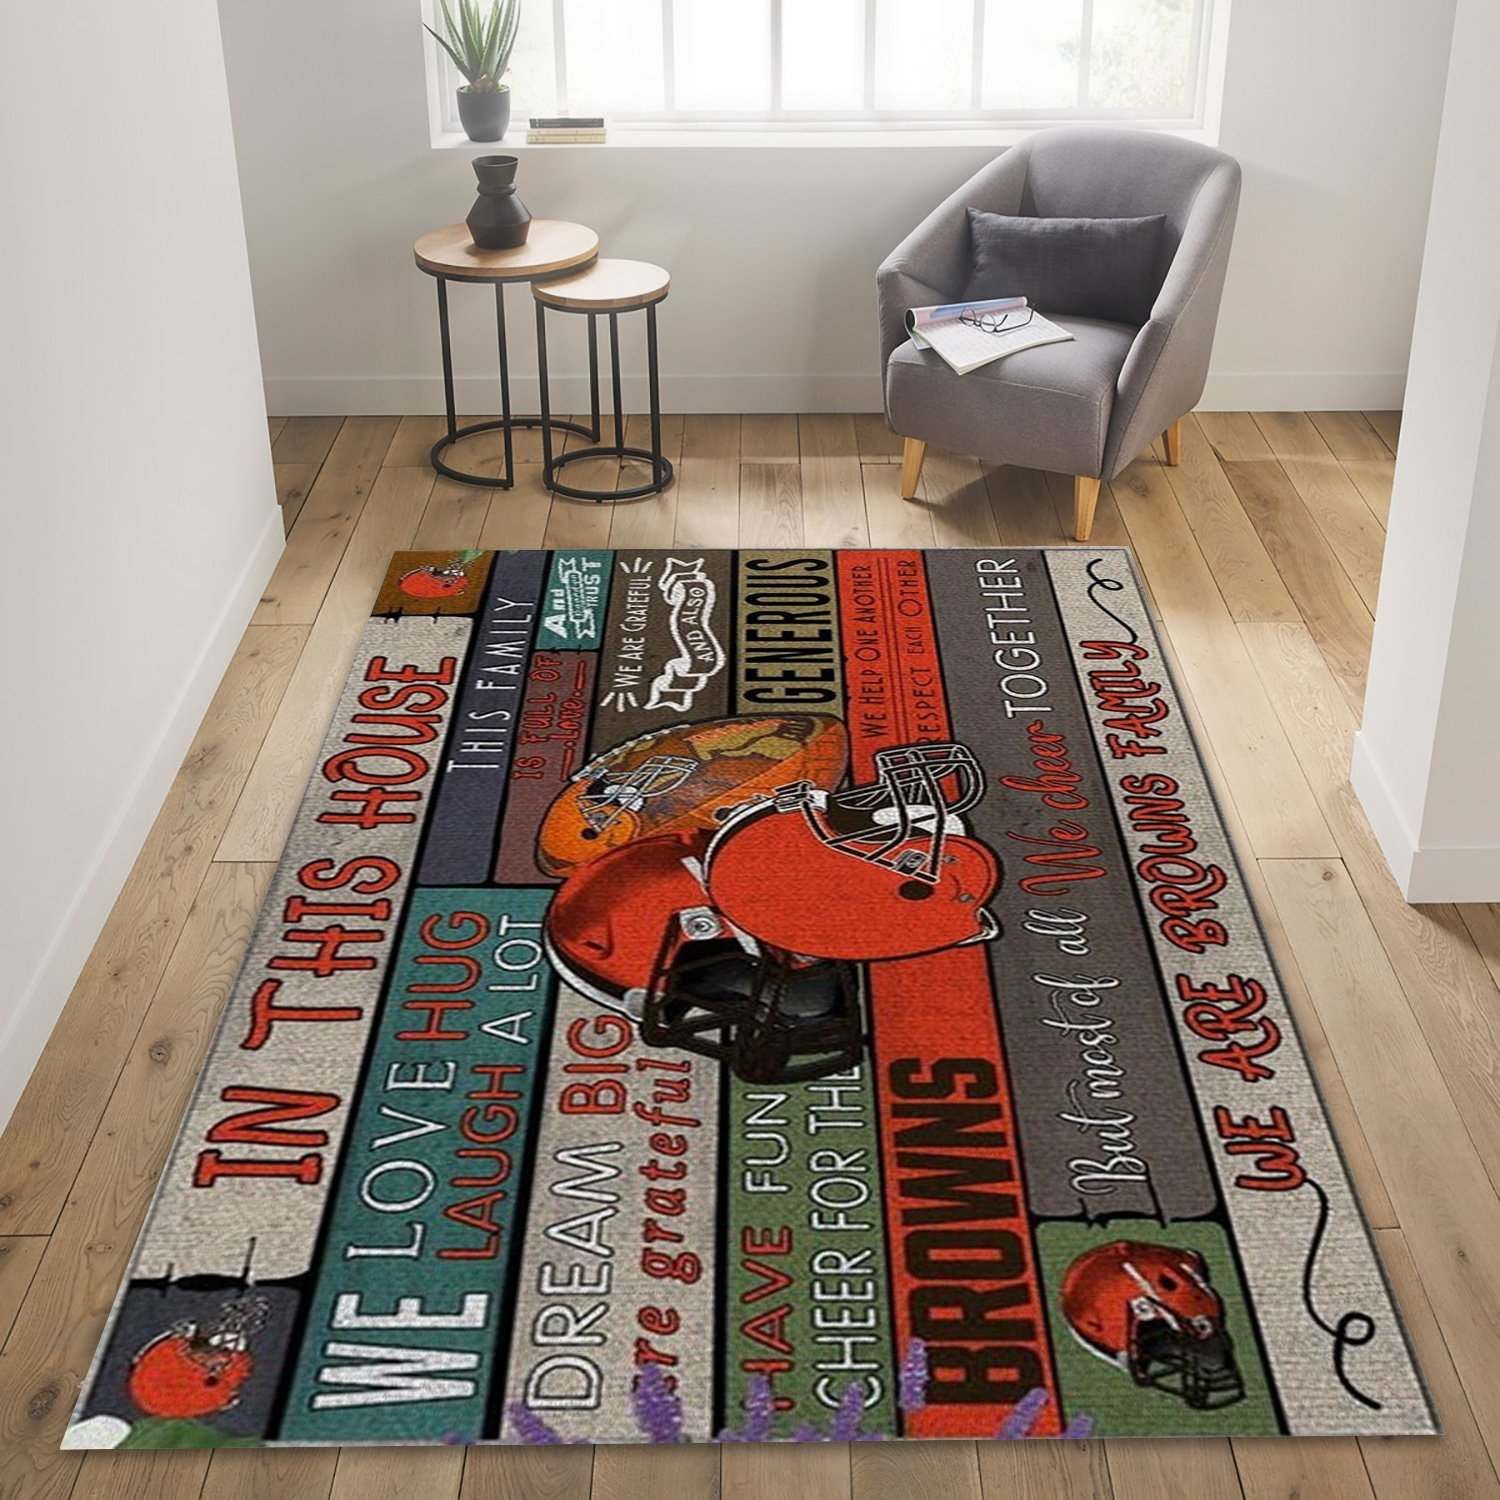 Cleveland Browns Nfl Floor home decoration carpet rug for fans